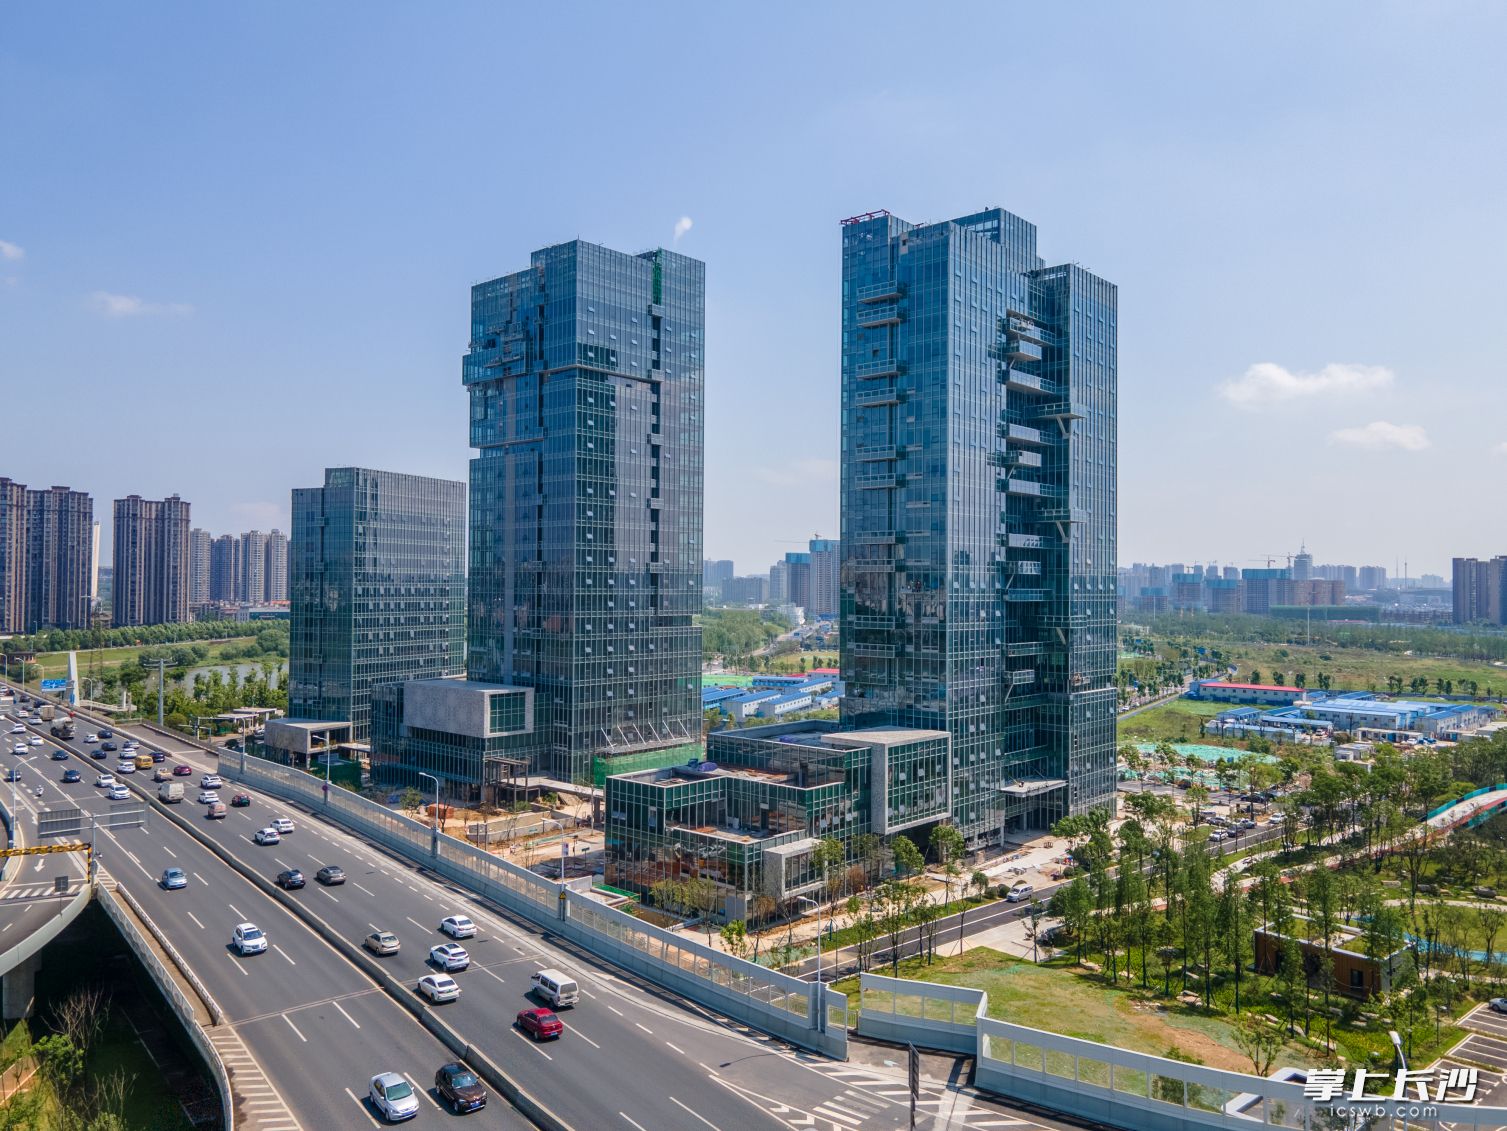 集中竣工项目之一的湖南创意设计总部大厦。 